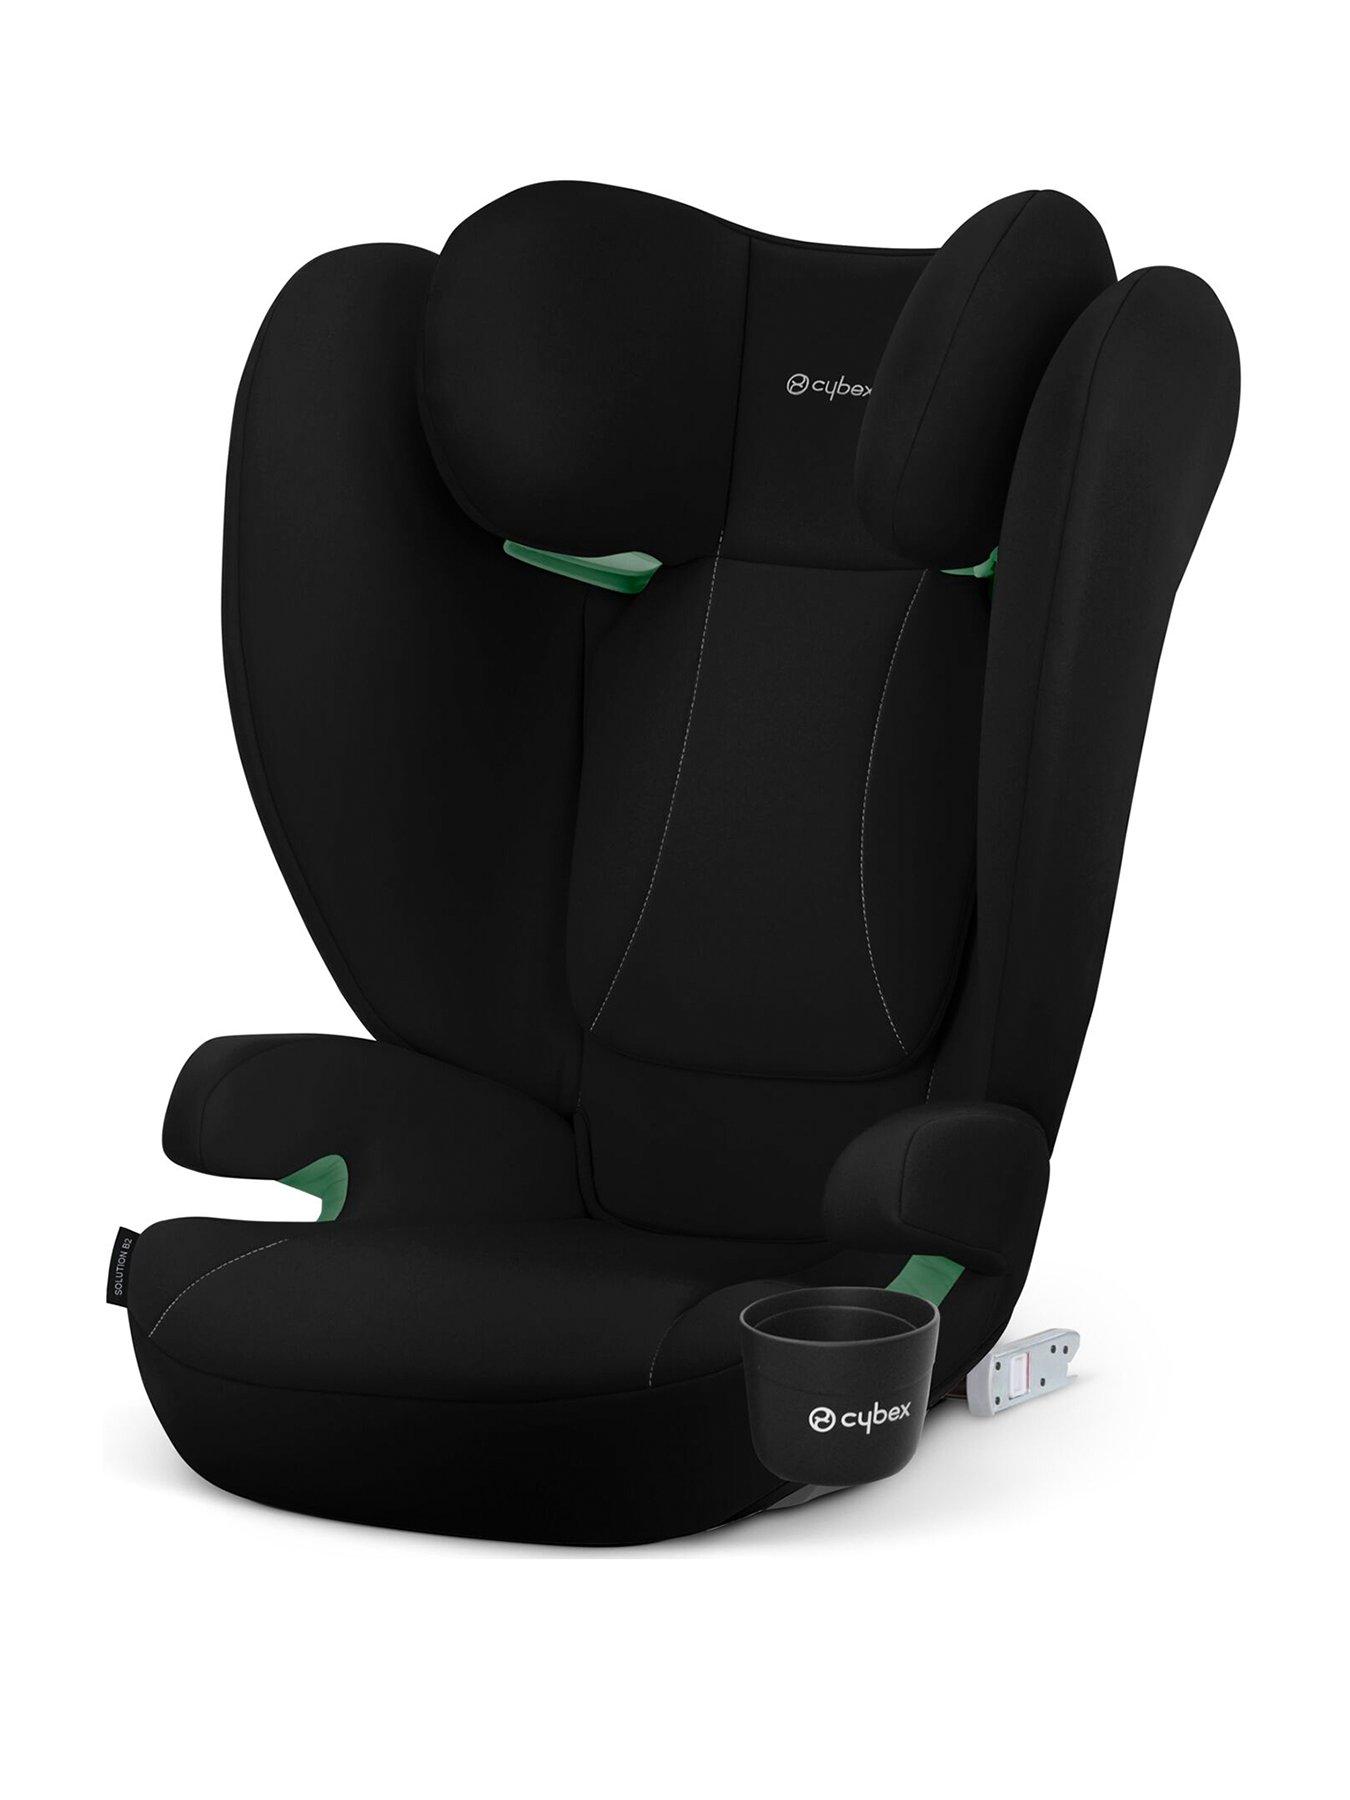 Cybex Solution T i-Fix car seat 100-150cm, Plus Cozy Beige